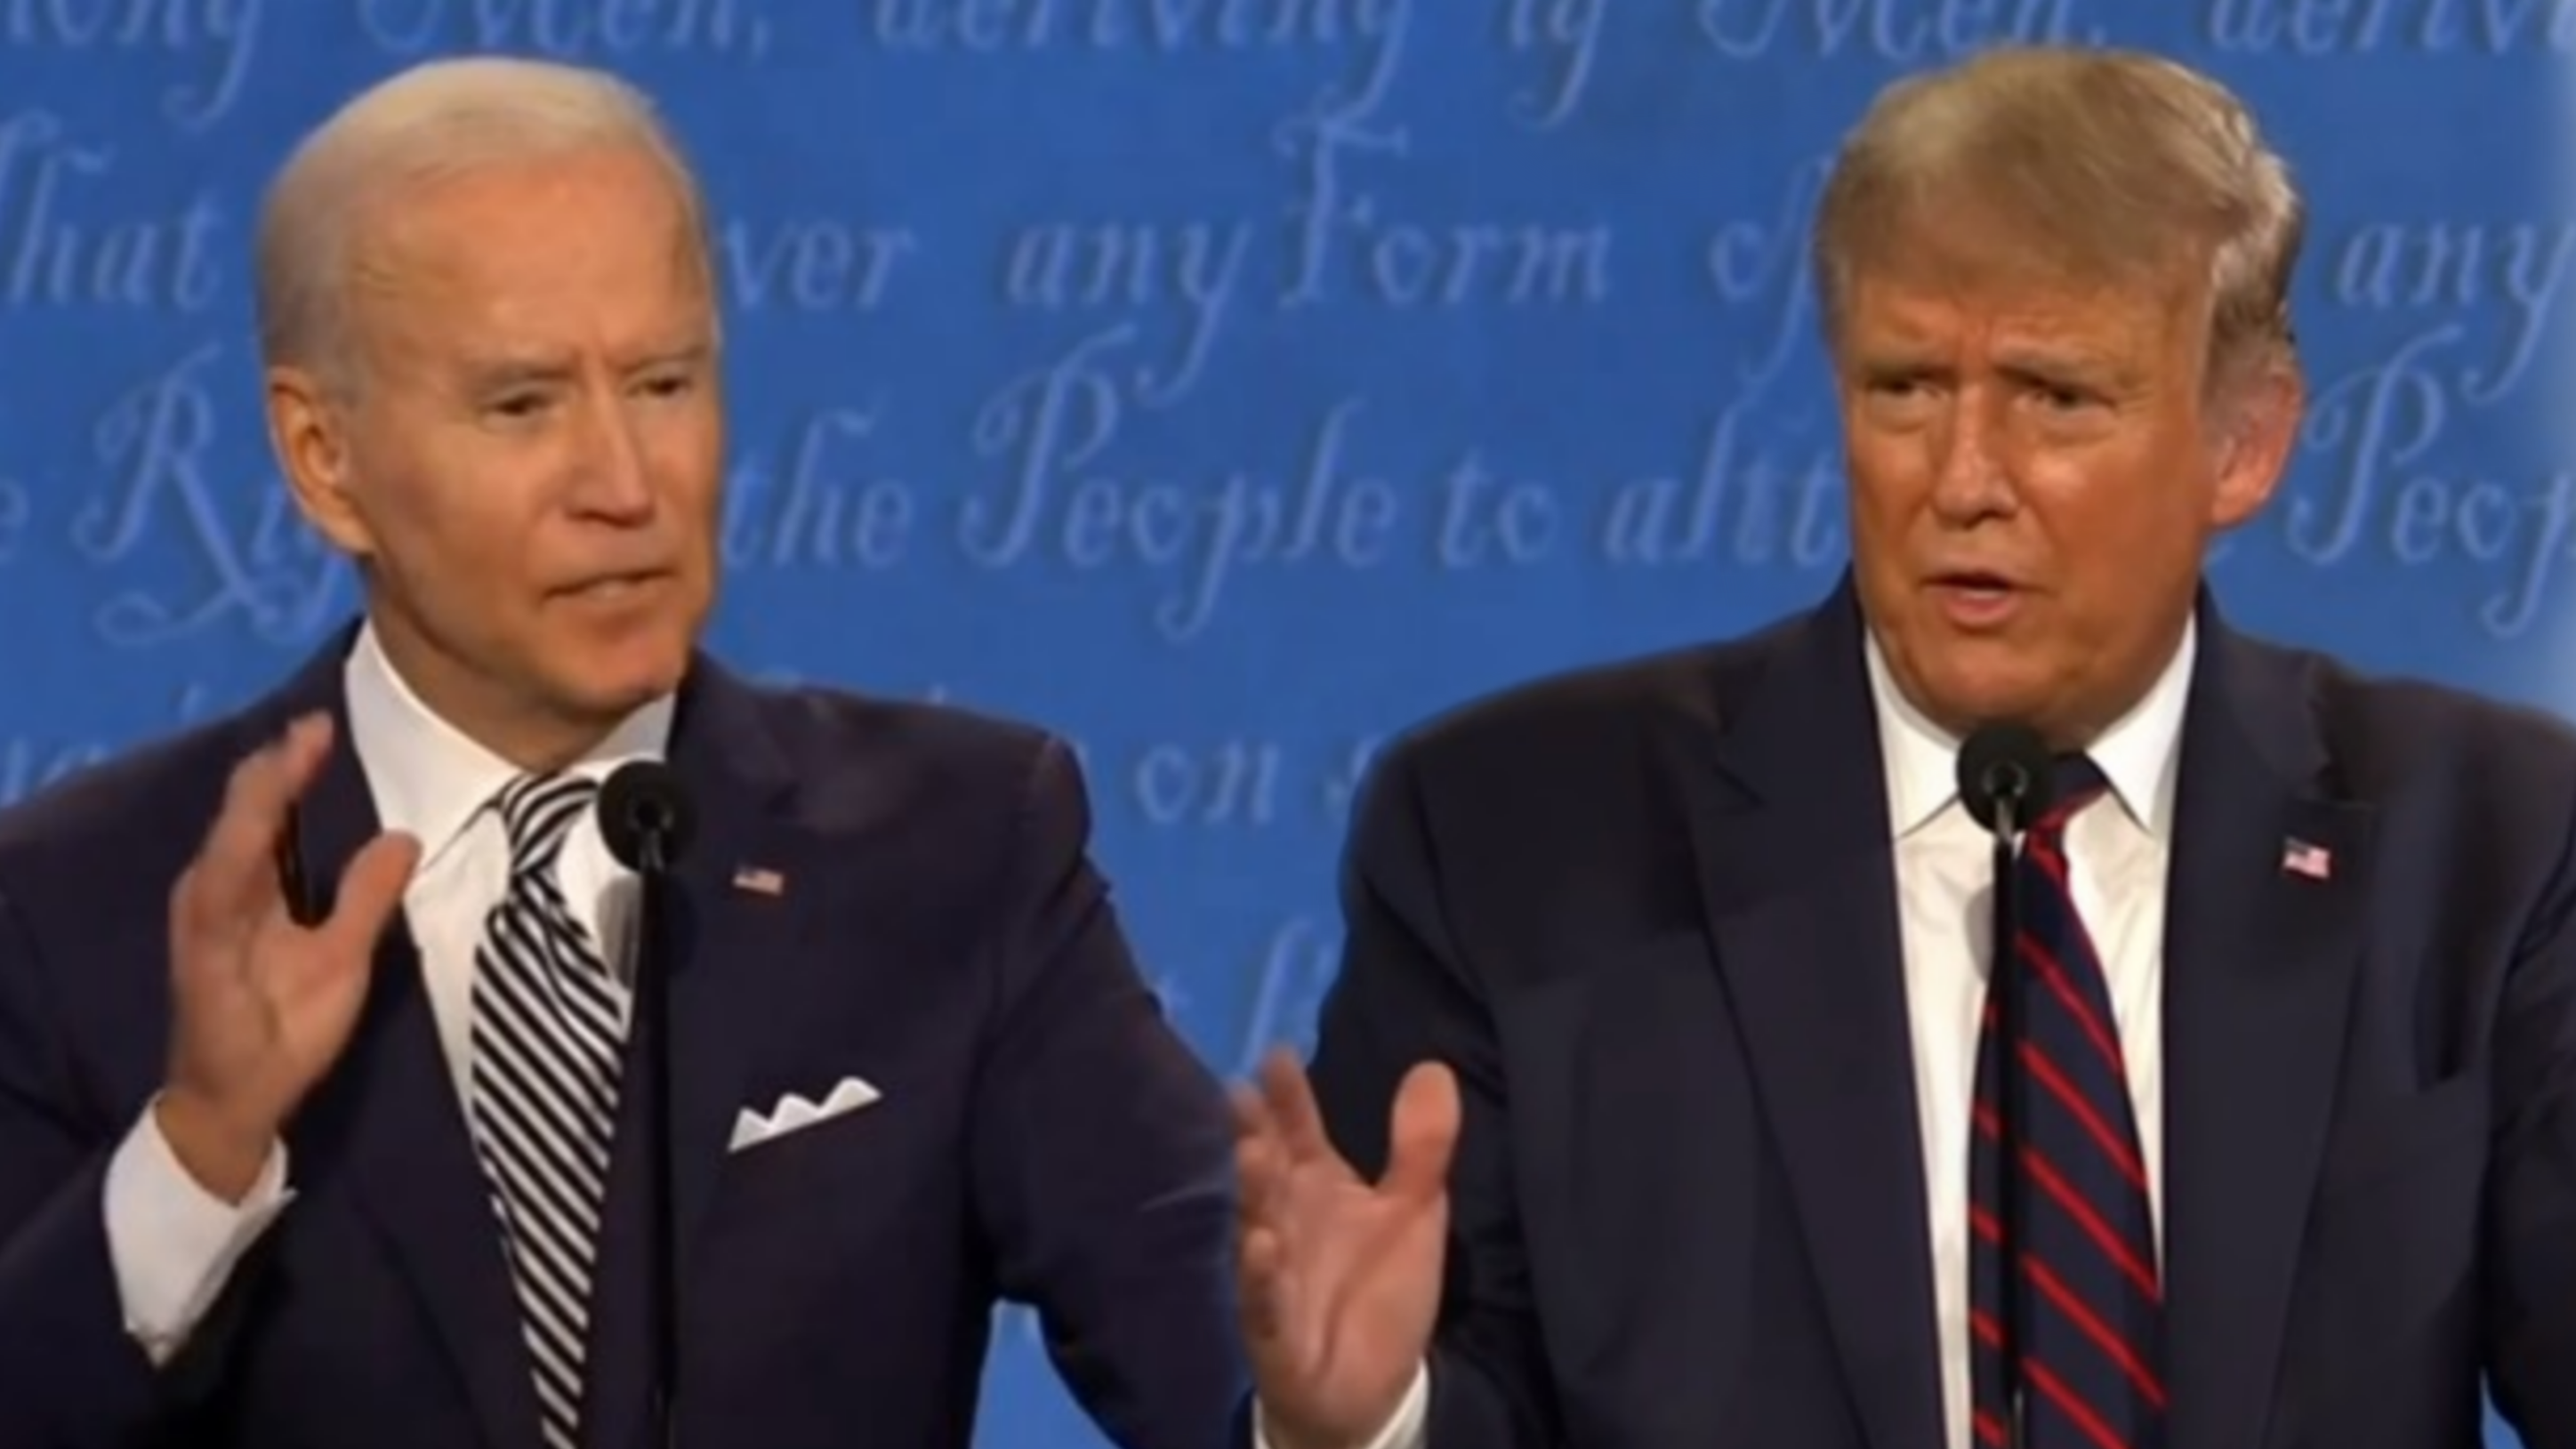 Primer debate presidencial entre Trump y Biden Alinstante RD